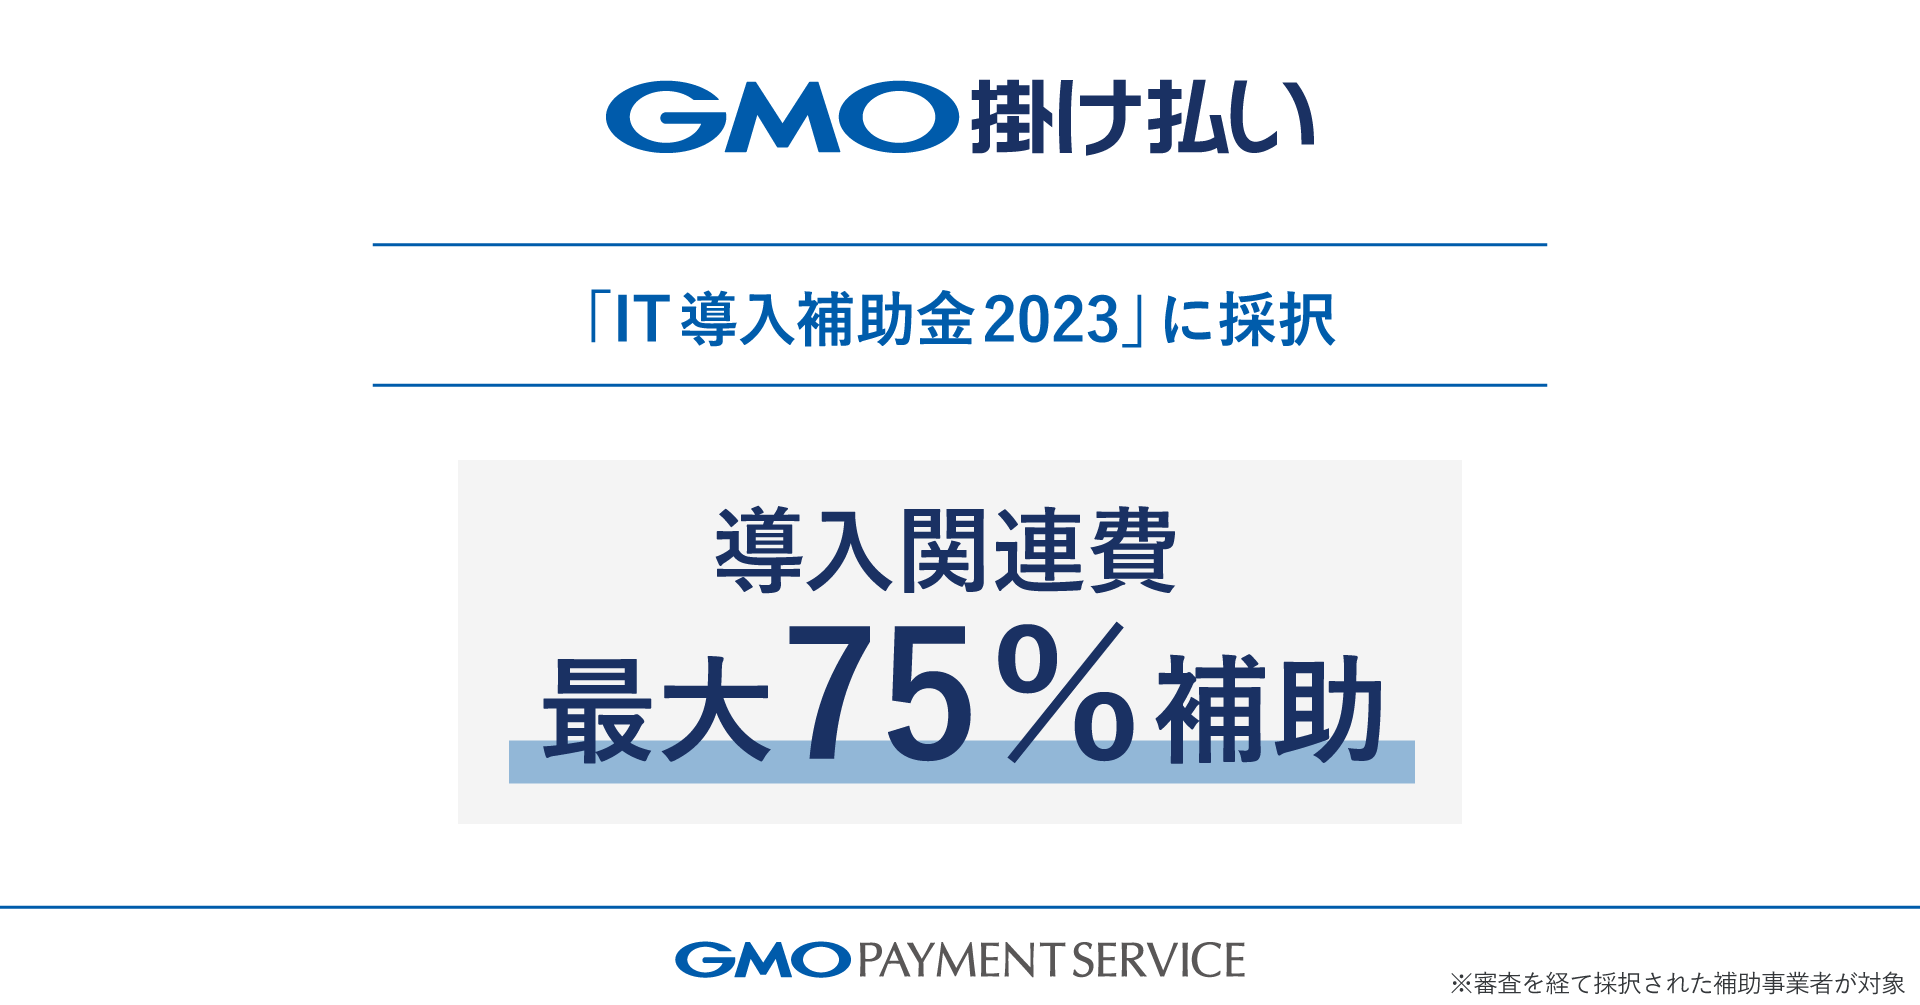 【GMO-PS】最大75％の補助を受けて「GMO掛け払い」の導入が可能に